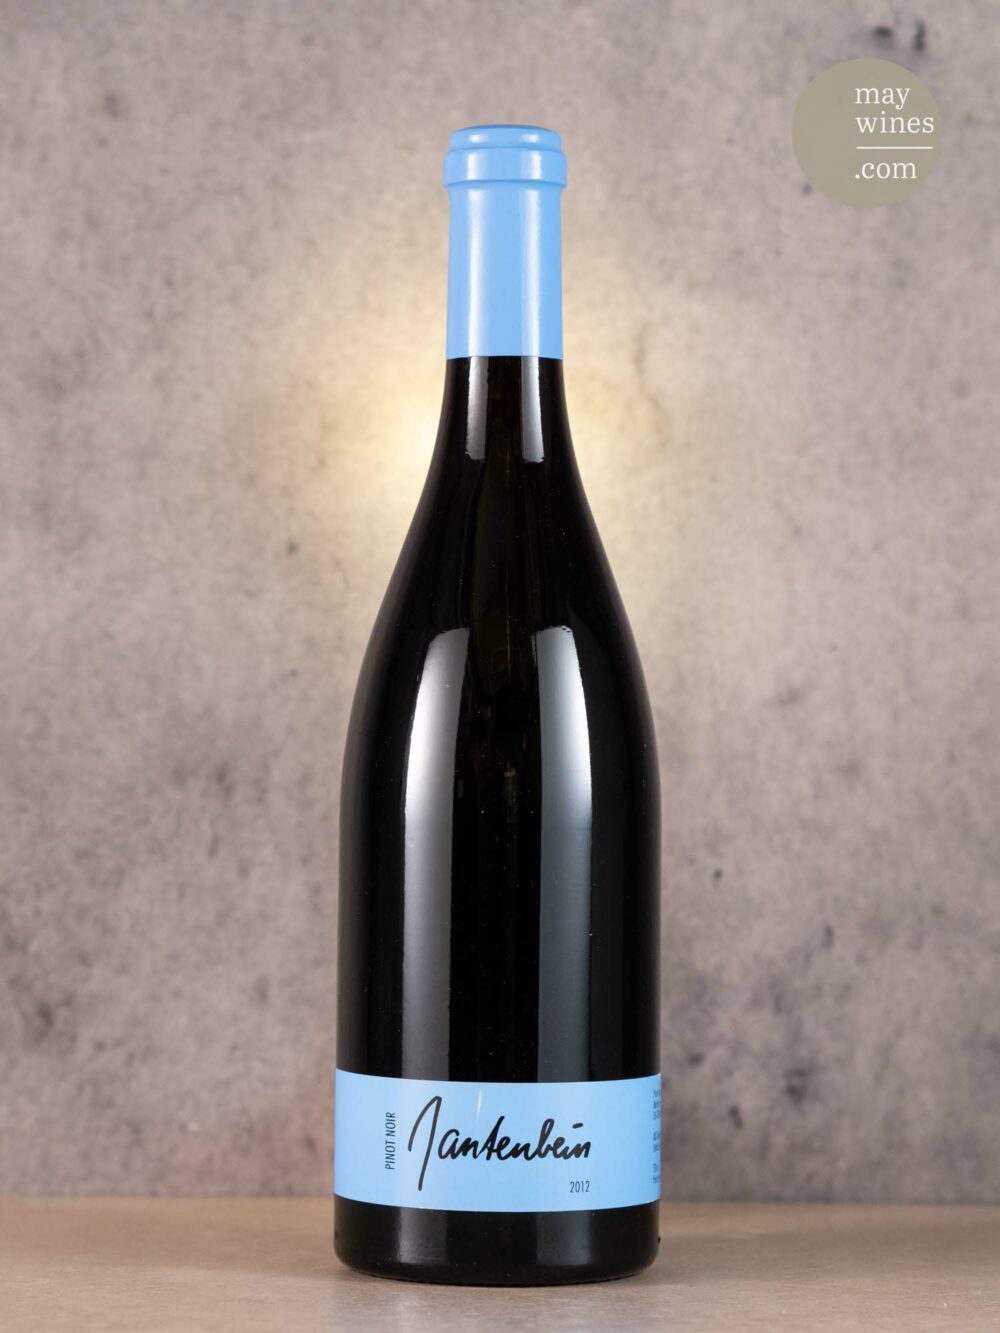 May Wines – Rotwein – 2012 Pinot Noir - Gantenbein